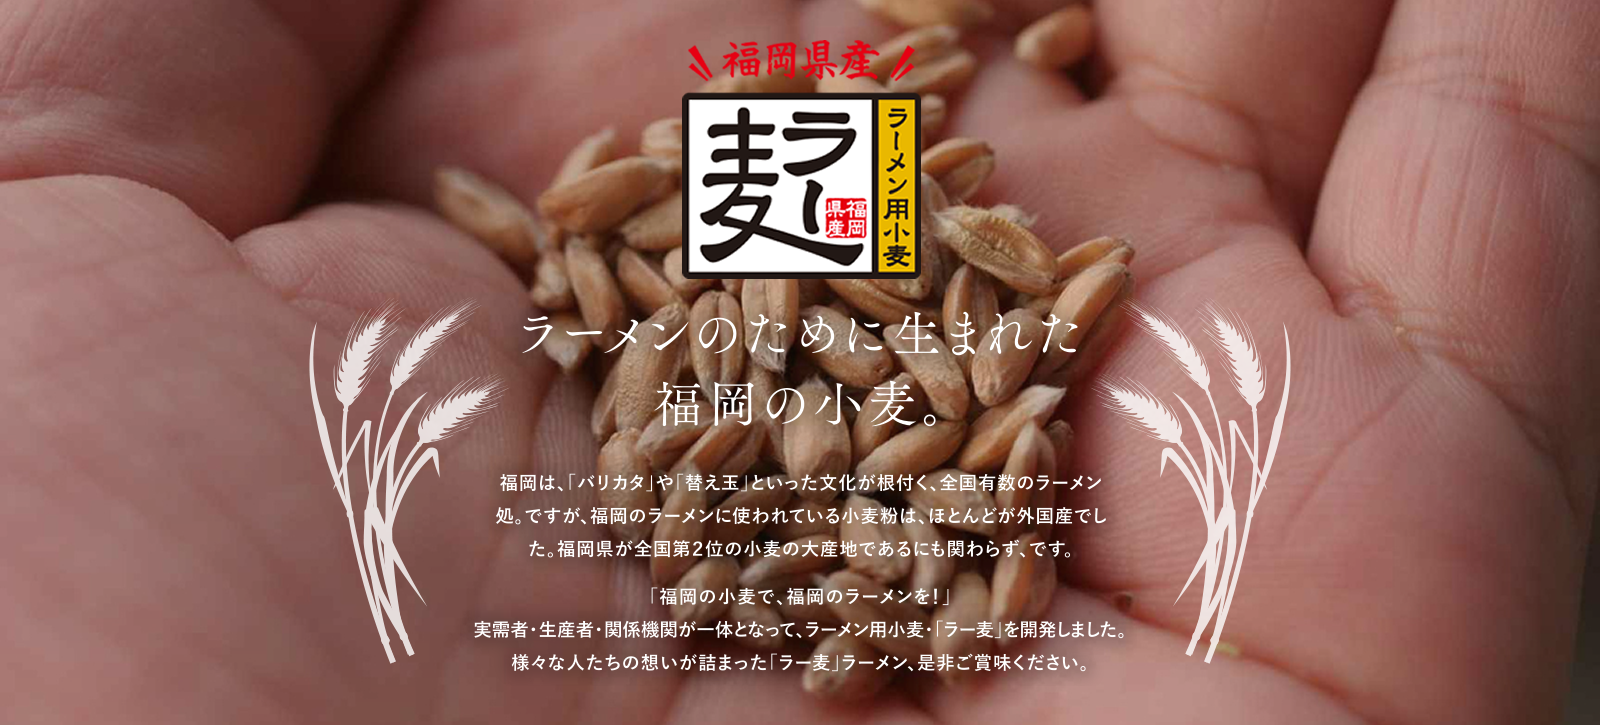 ラー麦のために生まれた福岡の小麦